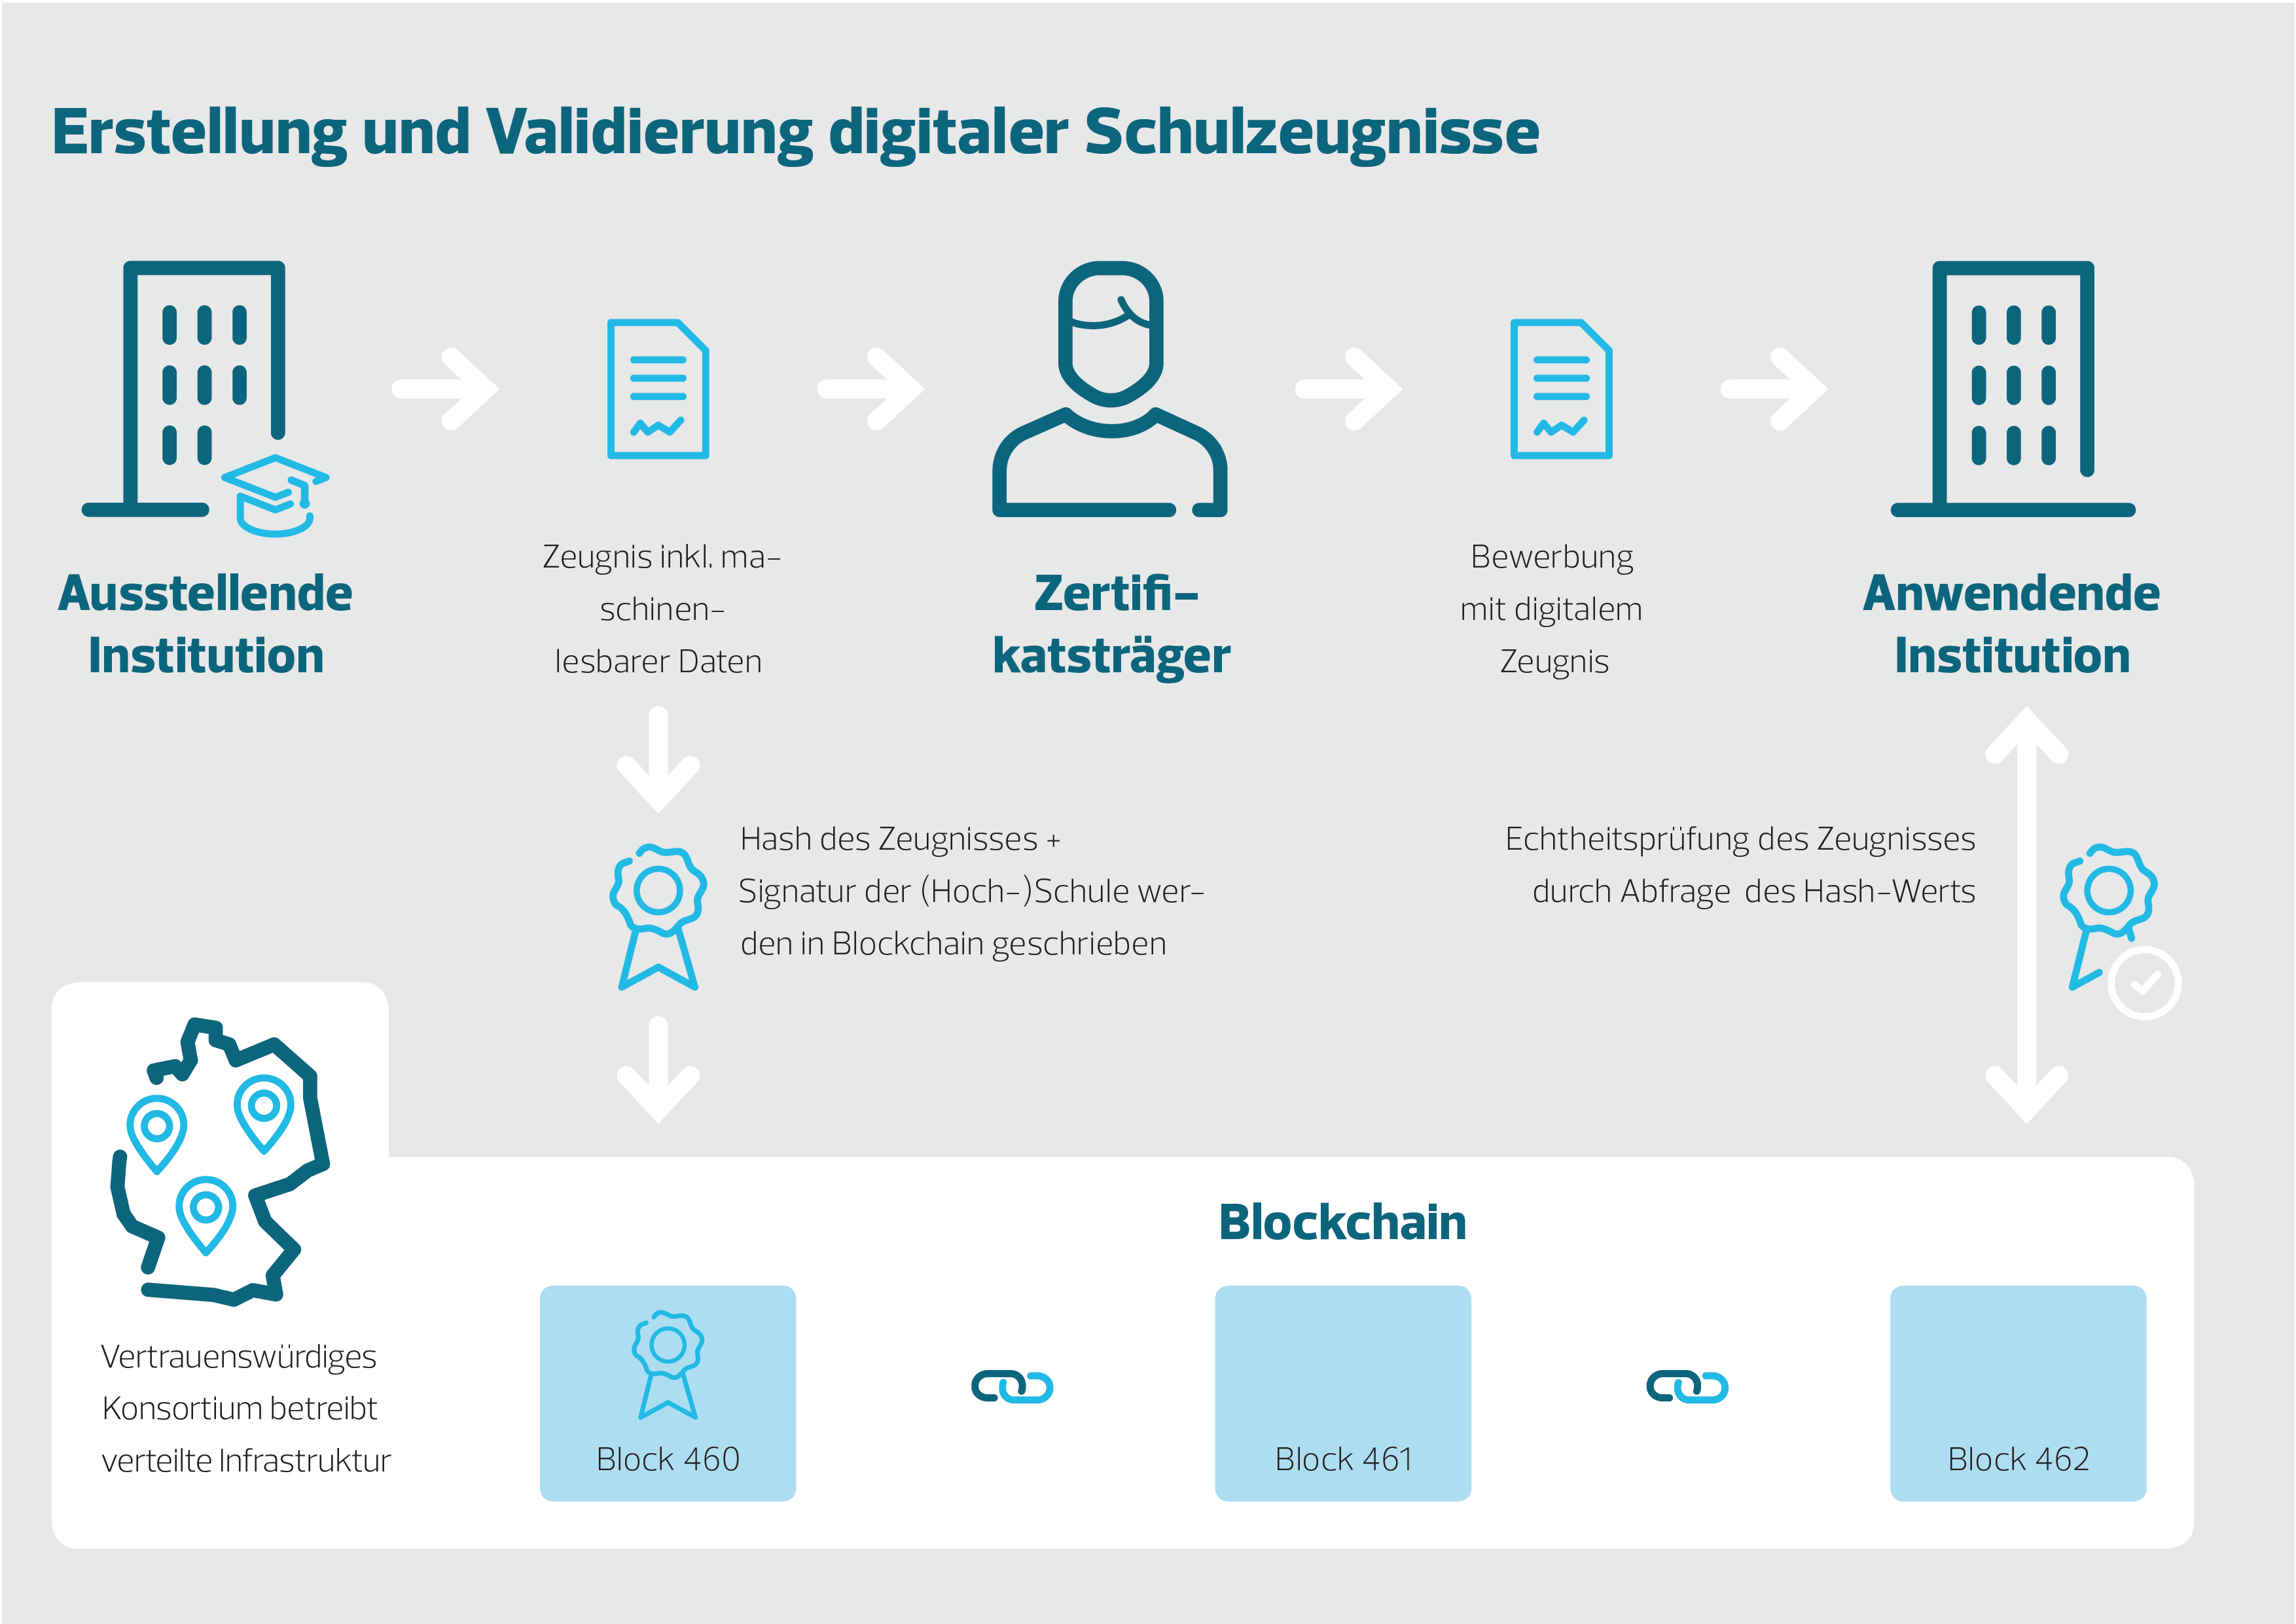 Erstellung und Validierung digitaler Schulzeugnisse, Quelle: Bundesdruckerei GmbH